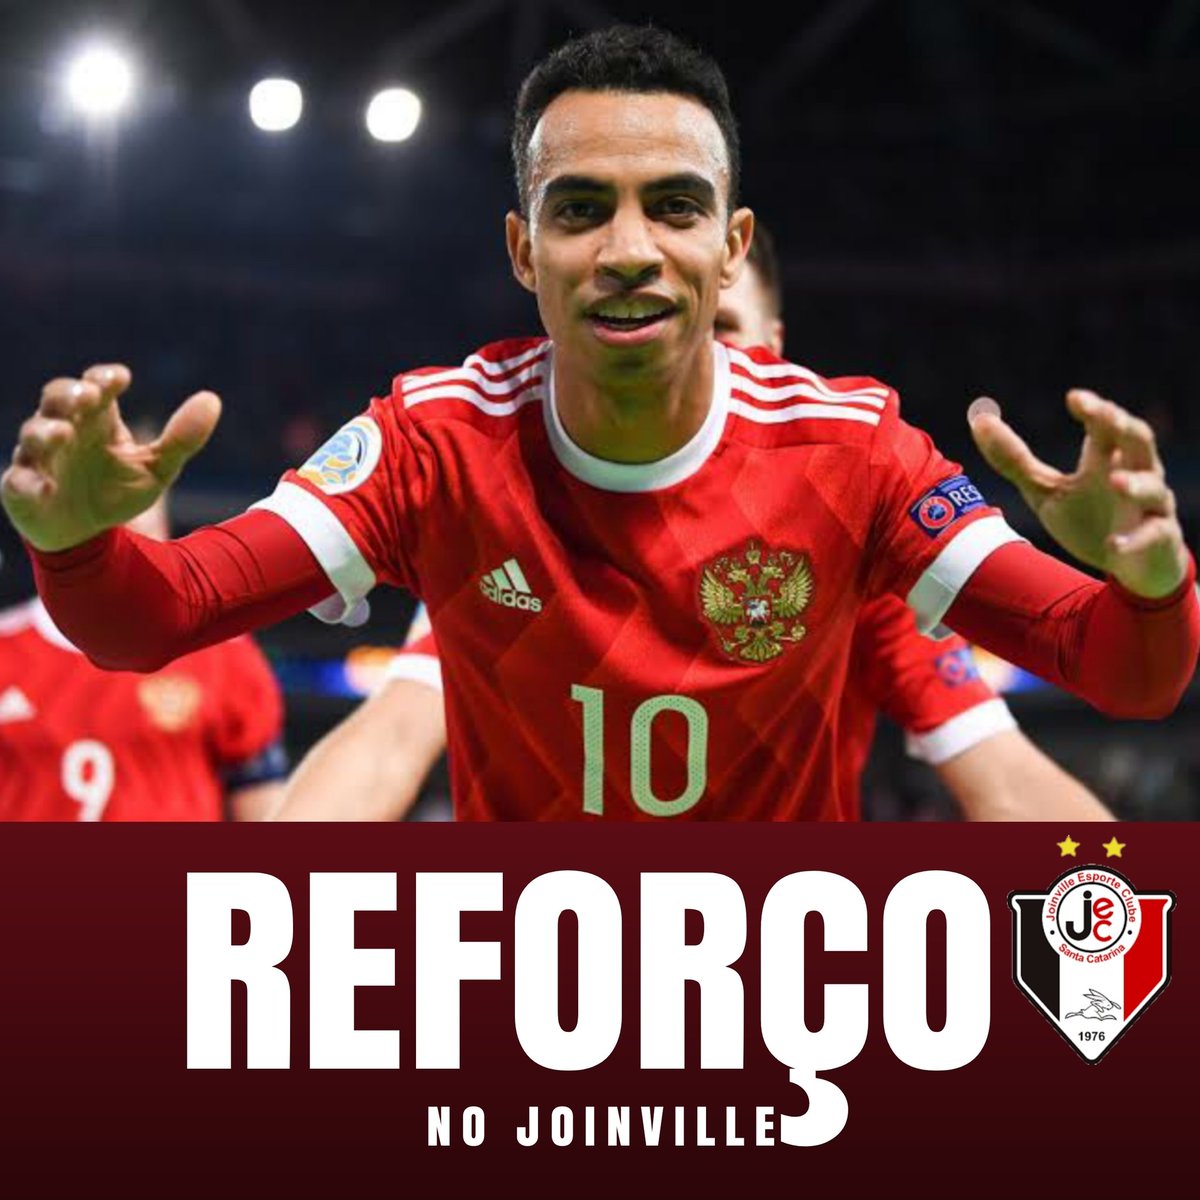 Robinho vai ser reforço do Joinville após o término da temporada na Europa entre junho e julho #Futsal #Futsalprofissional